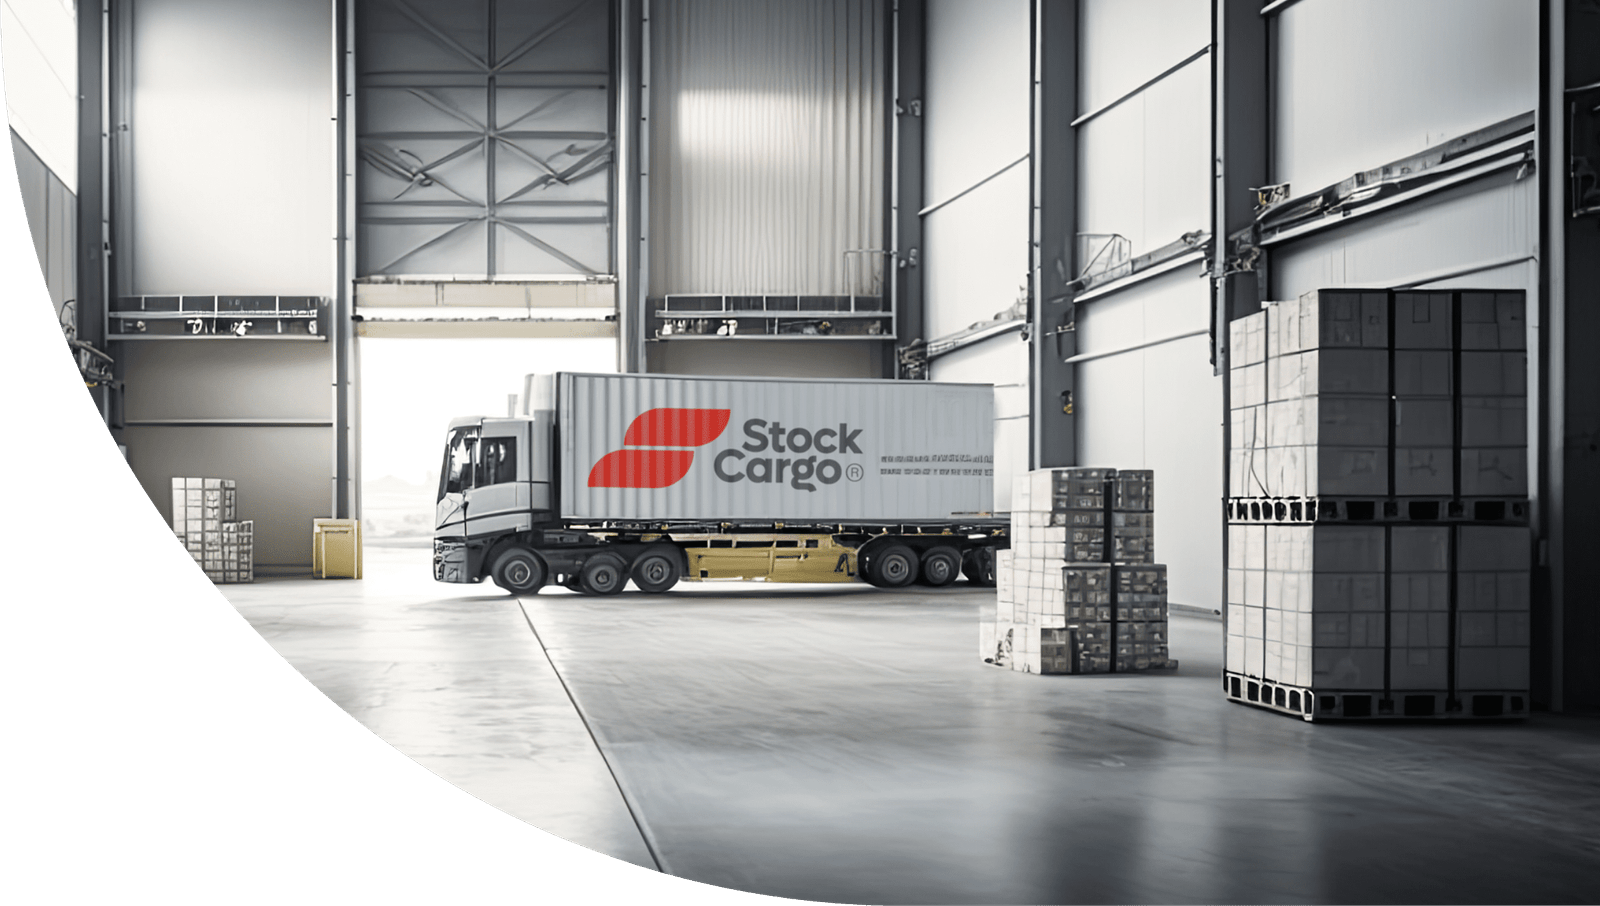 Stock Cargo